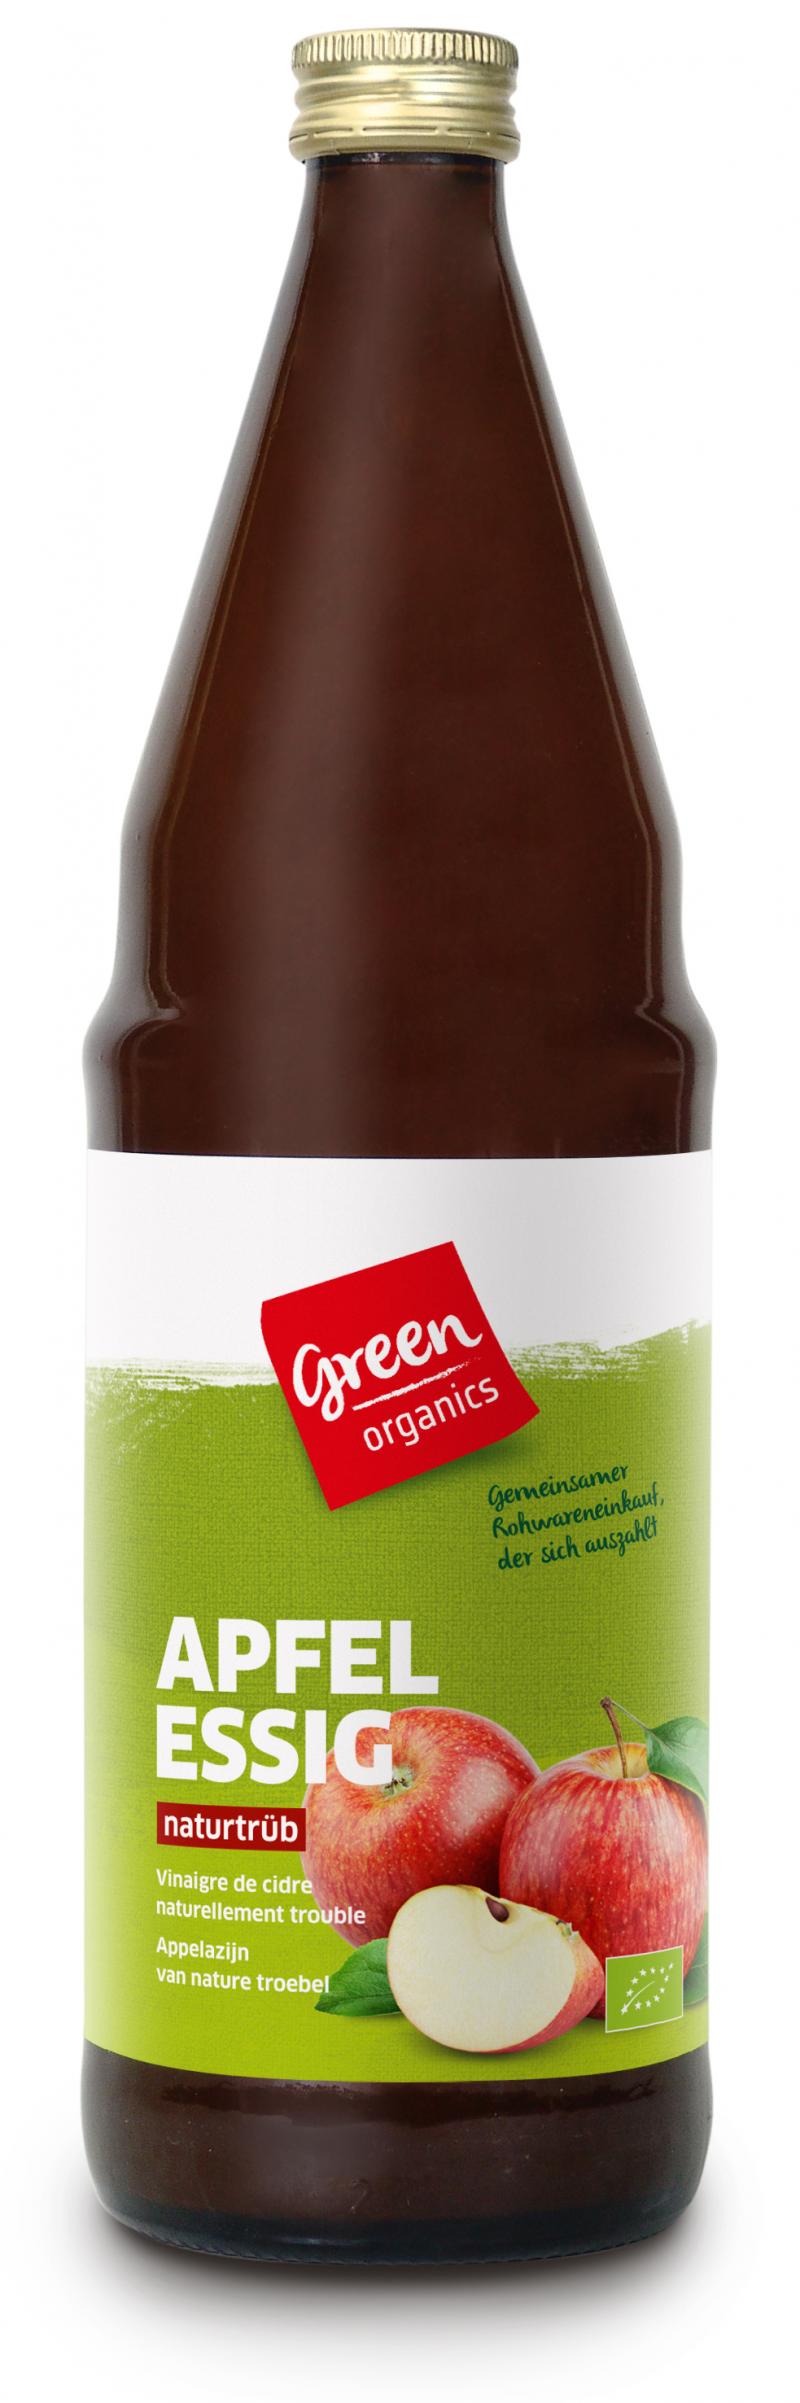 greenorganics Apfelessig 750ml